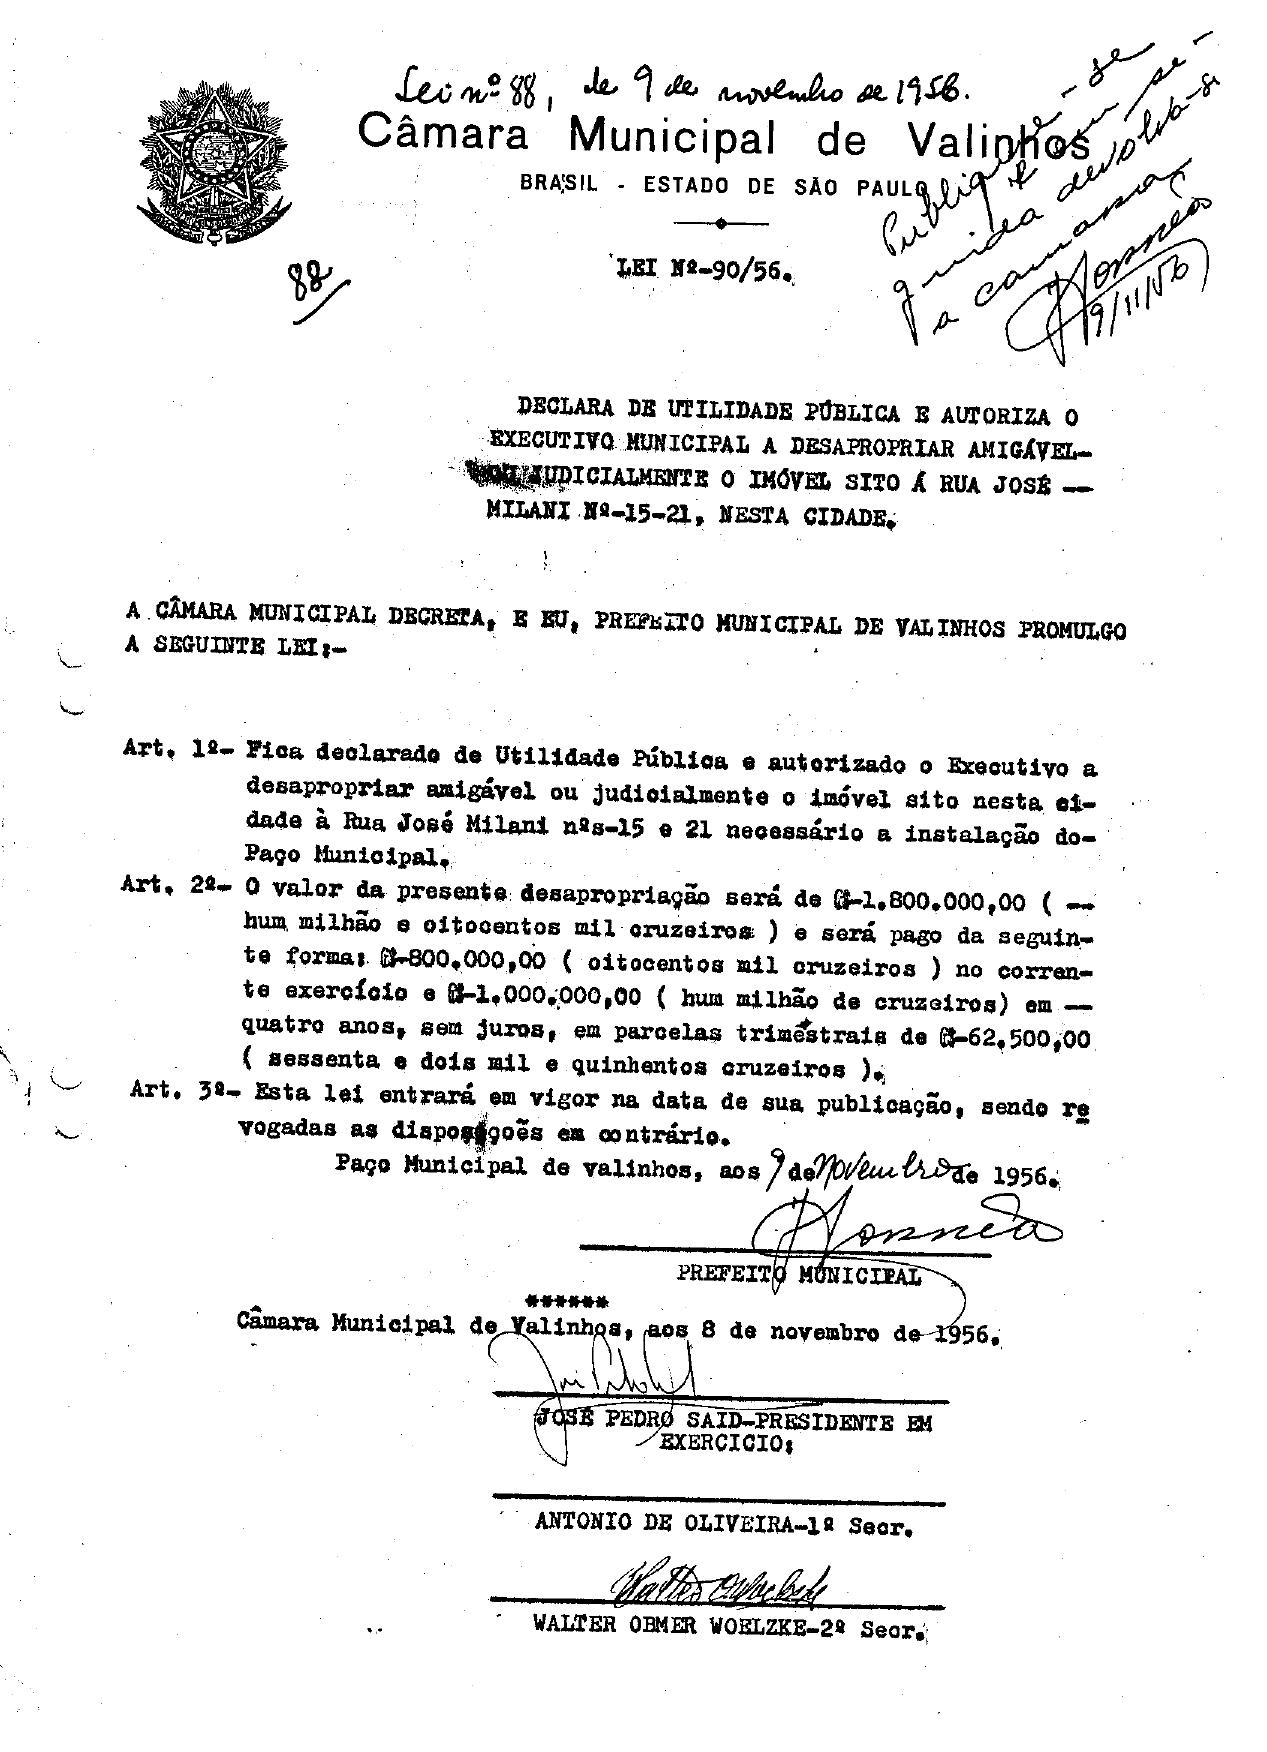 Lei nº 90/56 de 8 de novembro de 1956. Fonte: Prefeitura Municipal de Valinhos.